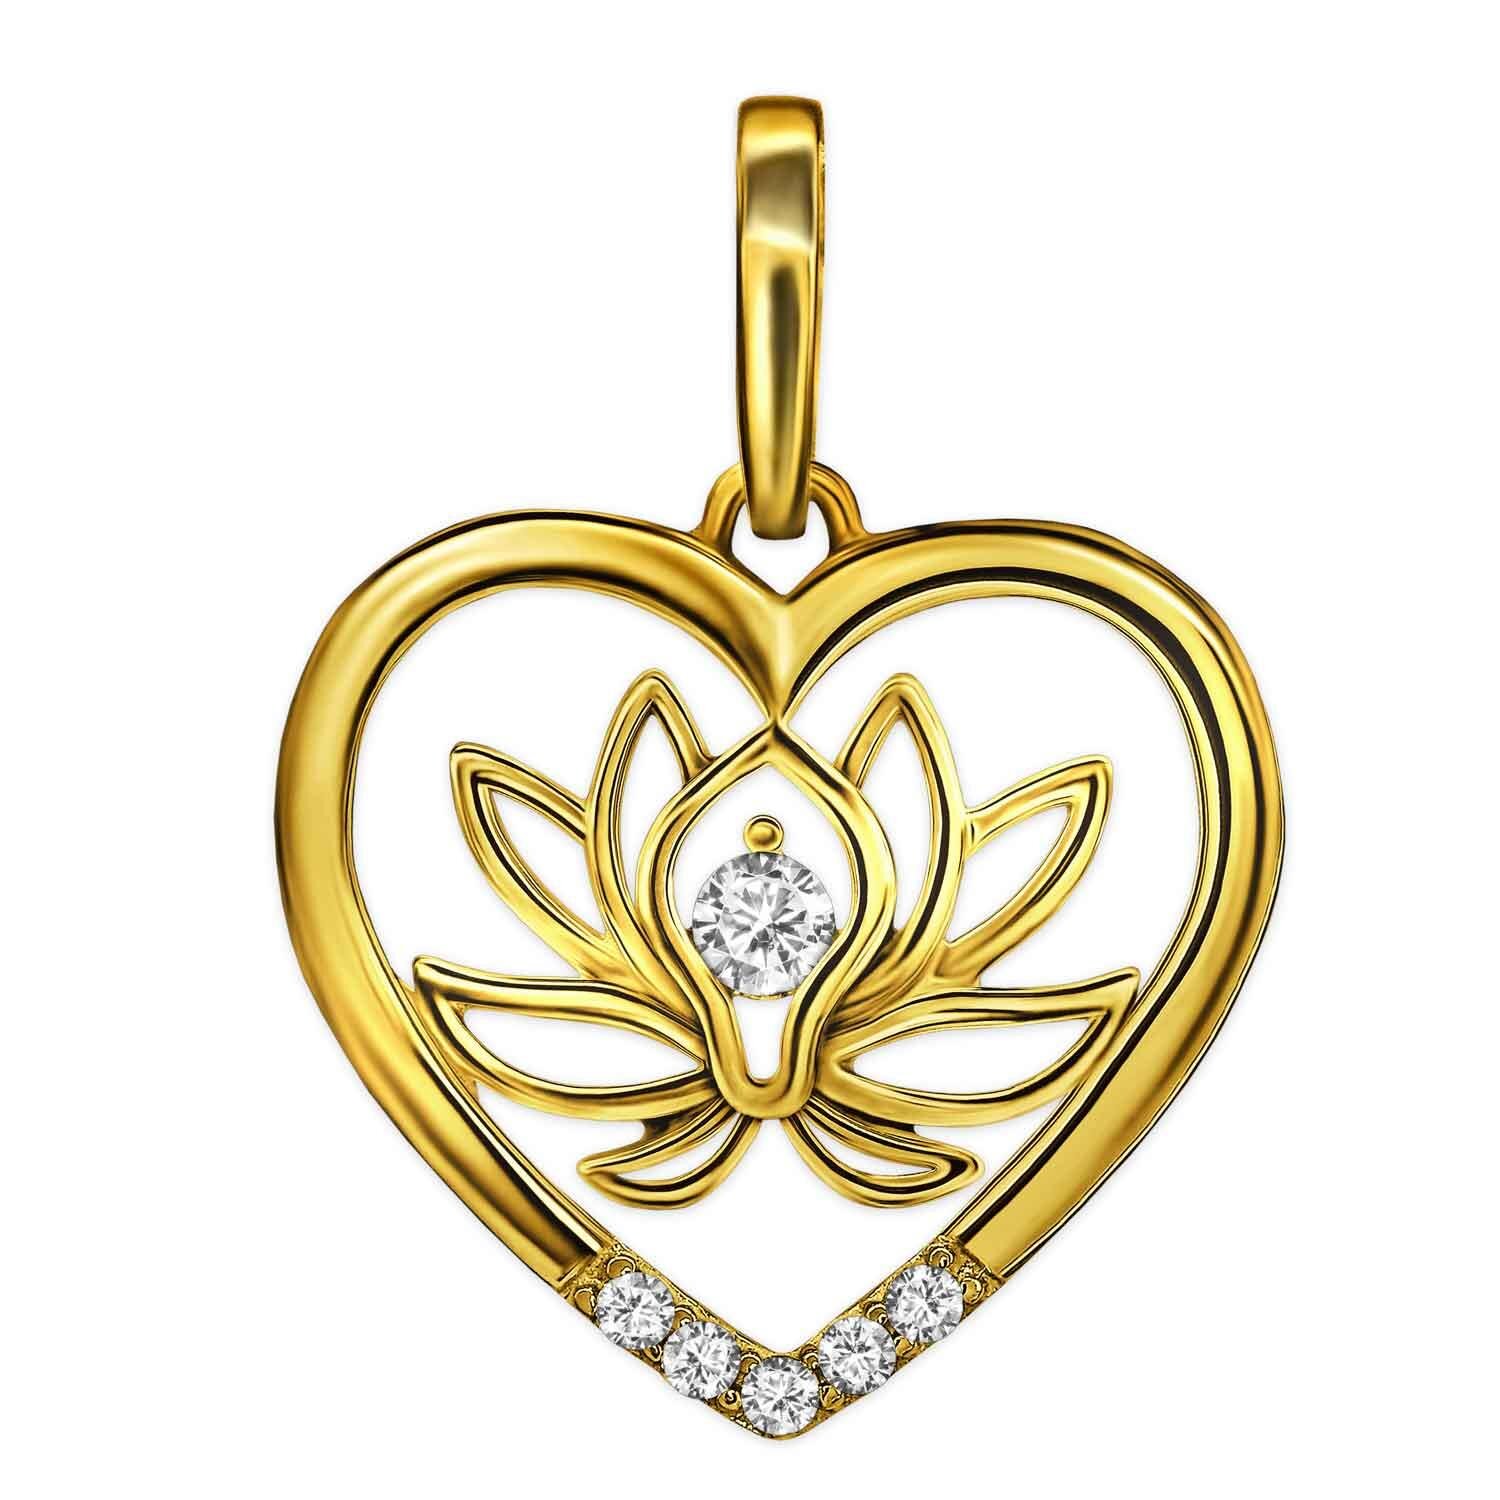 Goldene Lotusblume im Herz teils offen mit vielen Zirkonia 333 Gold